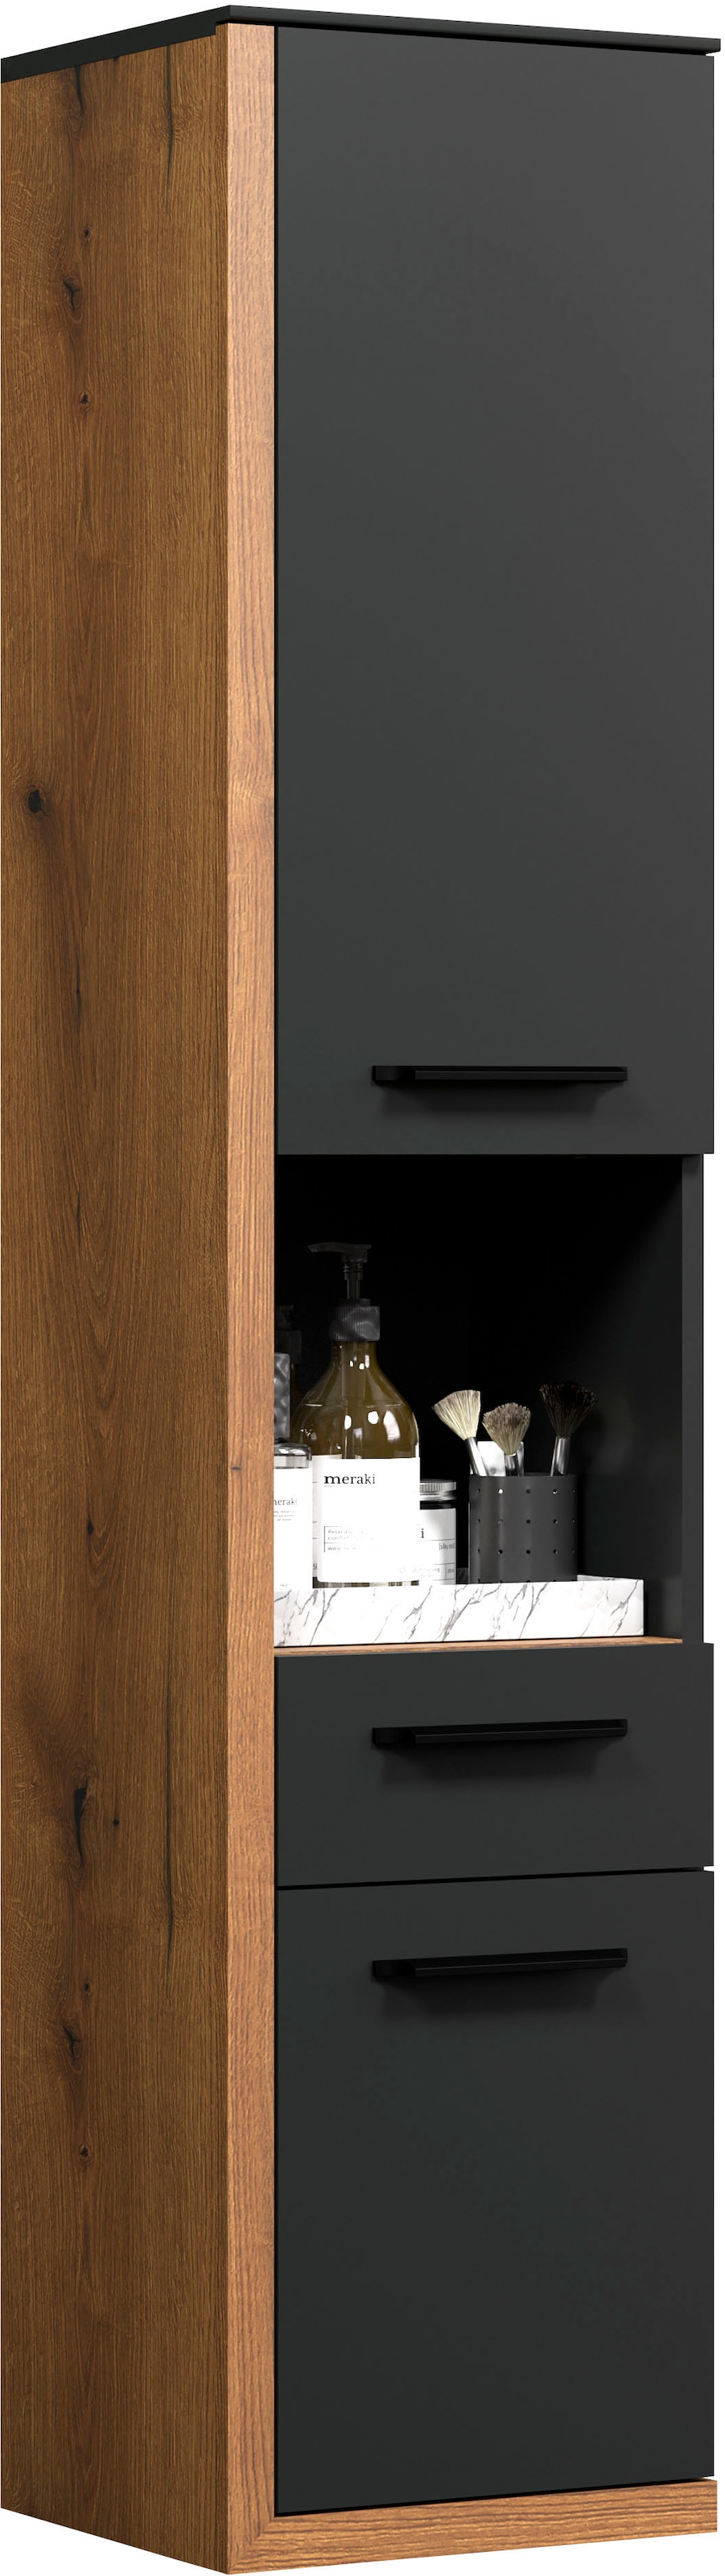 INOSIGN Midischrank »Premont«, (1 St.), grauer Bad-Hängeschrank, 35 cm x 157 cm hoch, Soft-Close, 2 Türen